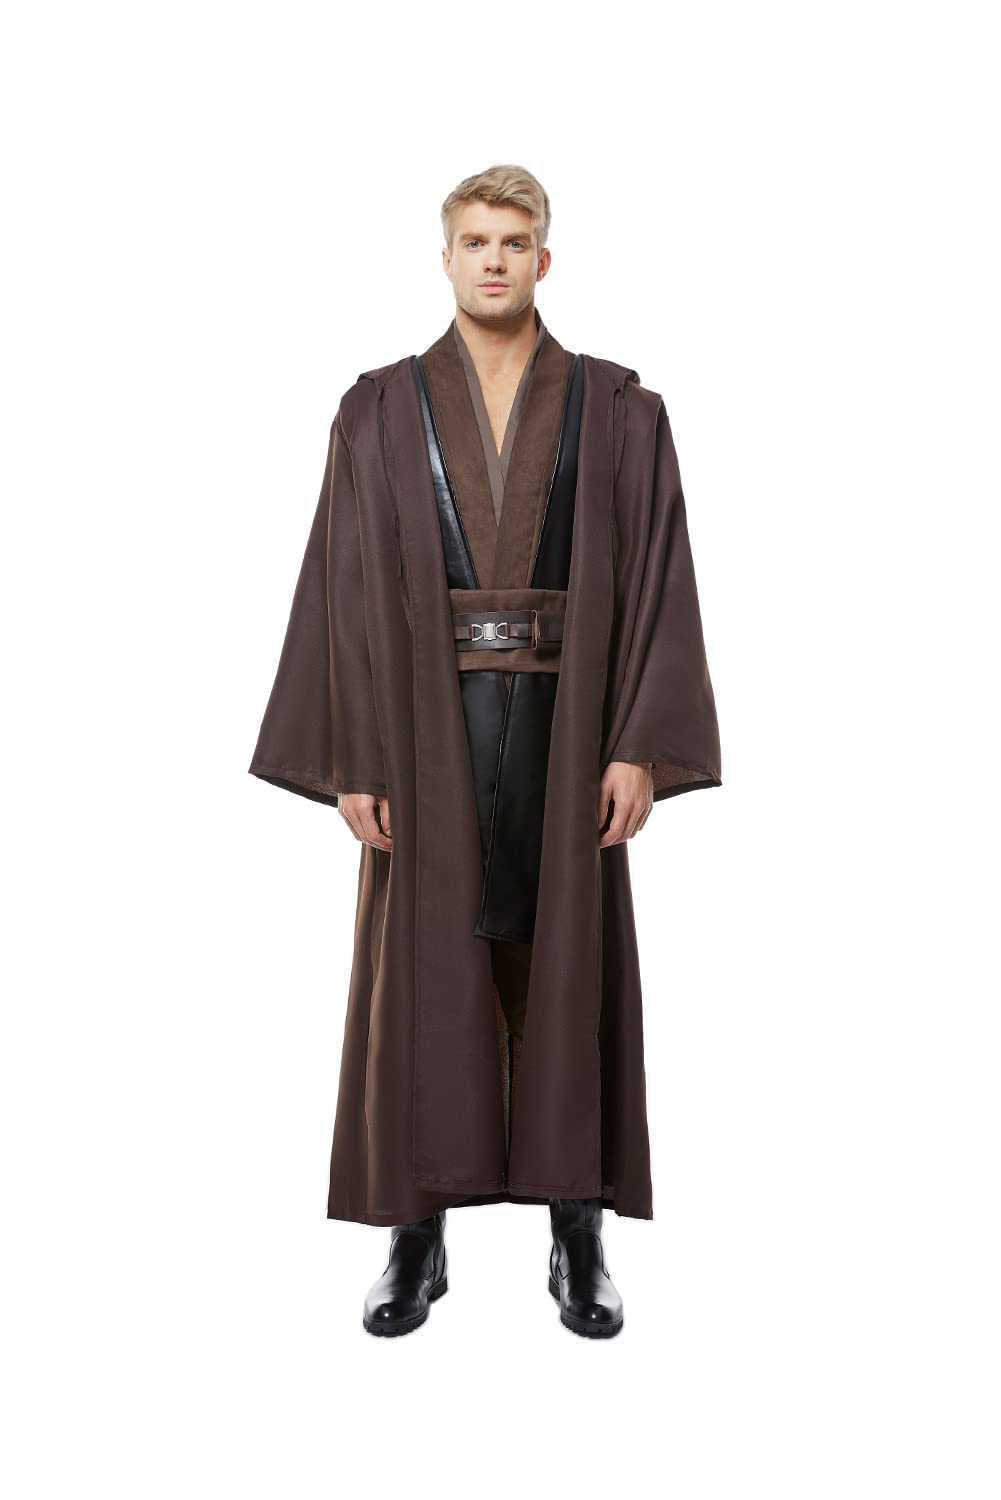 Kostor Anakin Skywalker Cosplay Kostüm Braun S